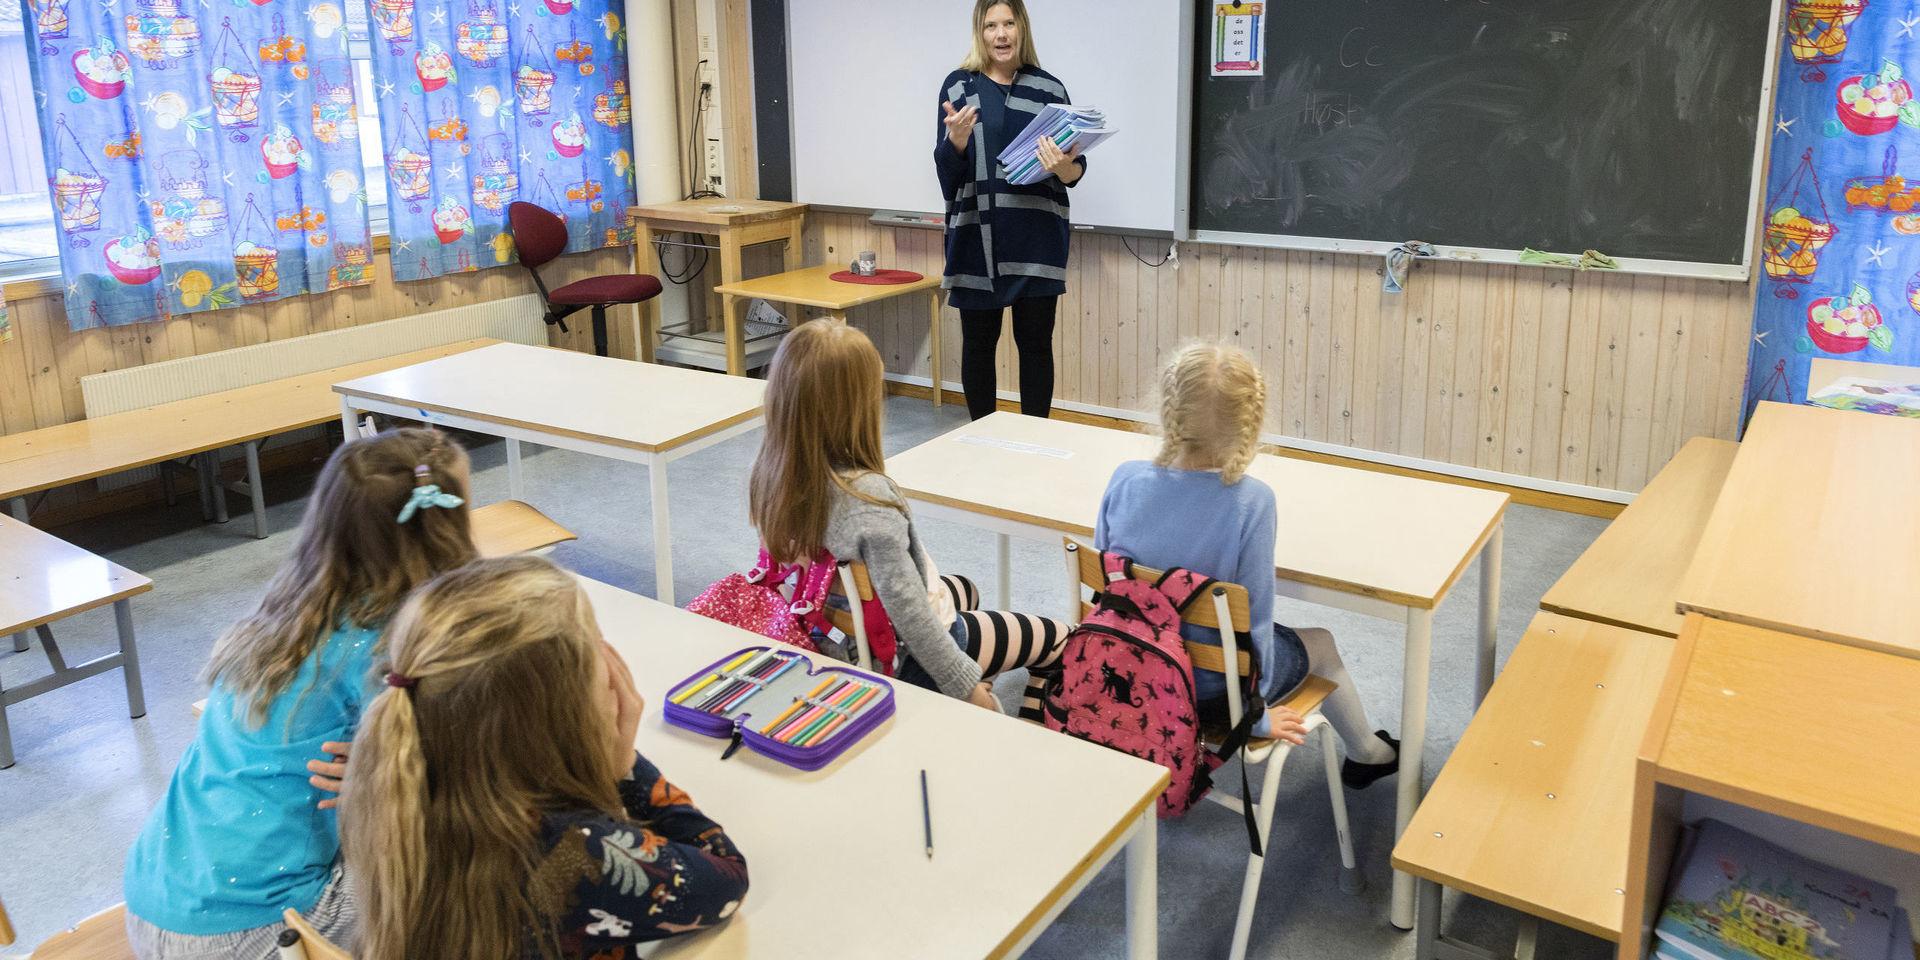 &quot;Just nu behöver inte Sverige färre skolor. Tvärtom, det kommer att behövas många fler utbildningsplatser de närmaste åren, bland annat på grund av ökande elevkullar.&quot; 